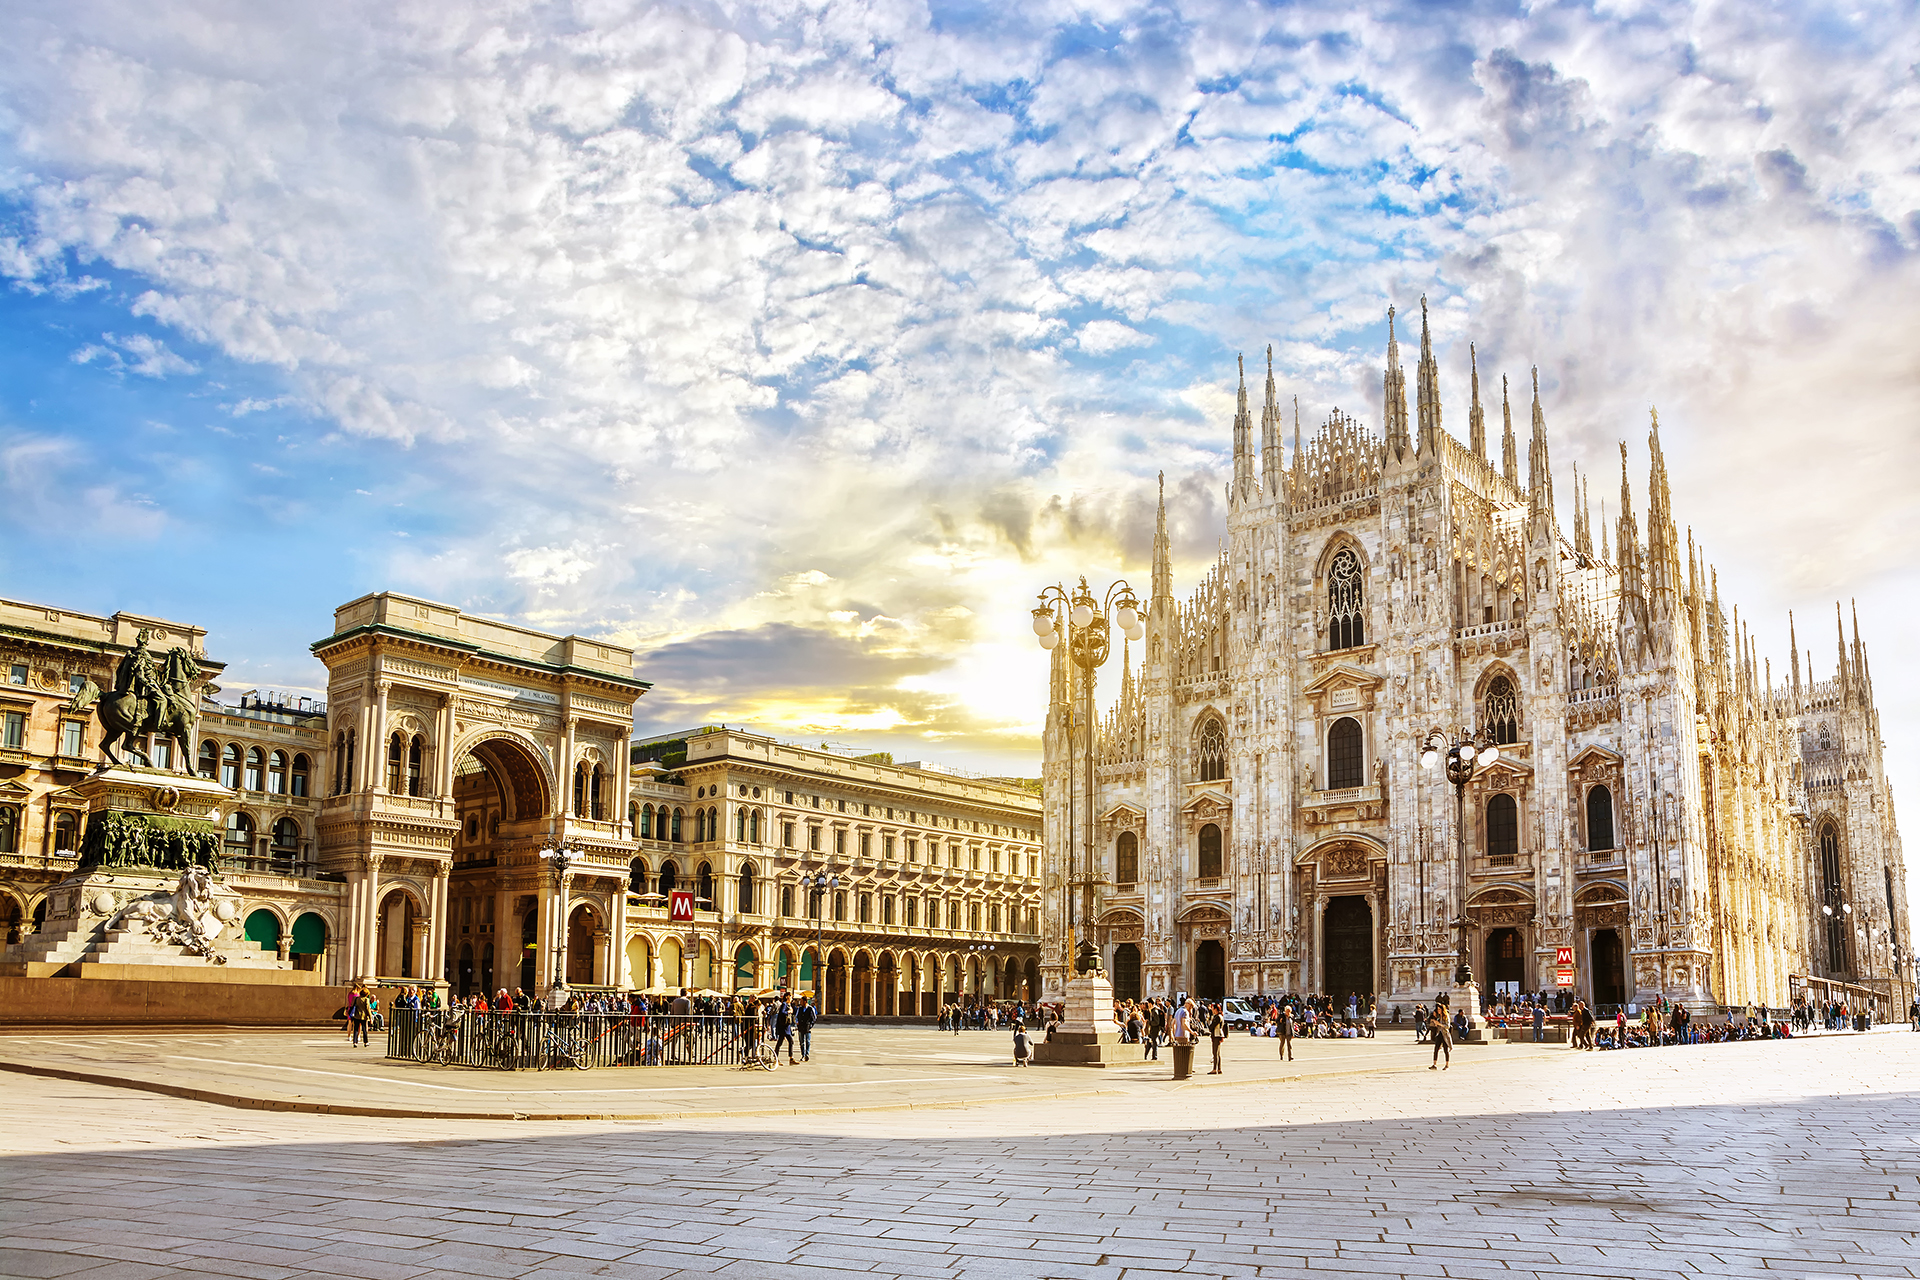 Ciudades italianas como Milán experimentaron algunas de las mayores caídas de precios desde el cierre, donde los costos generales cayeron un 18,7% de marzo a agosto de 2020 